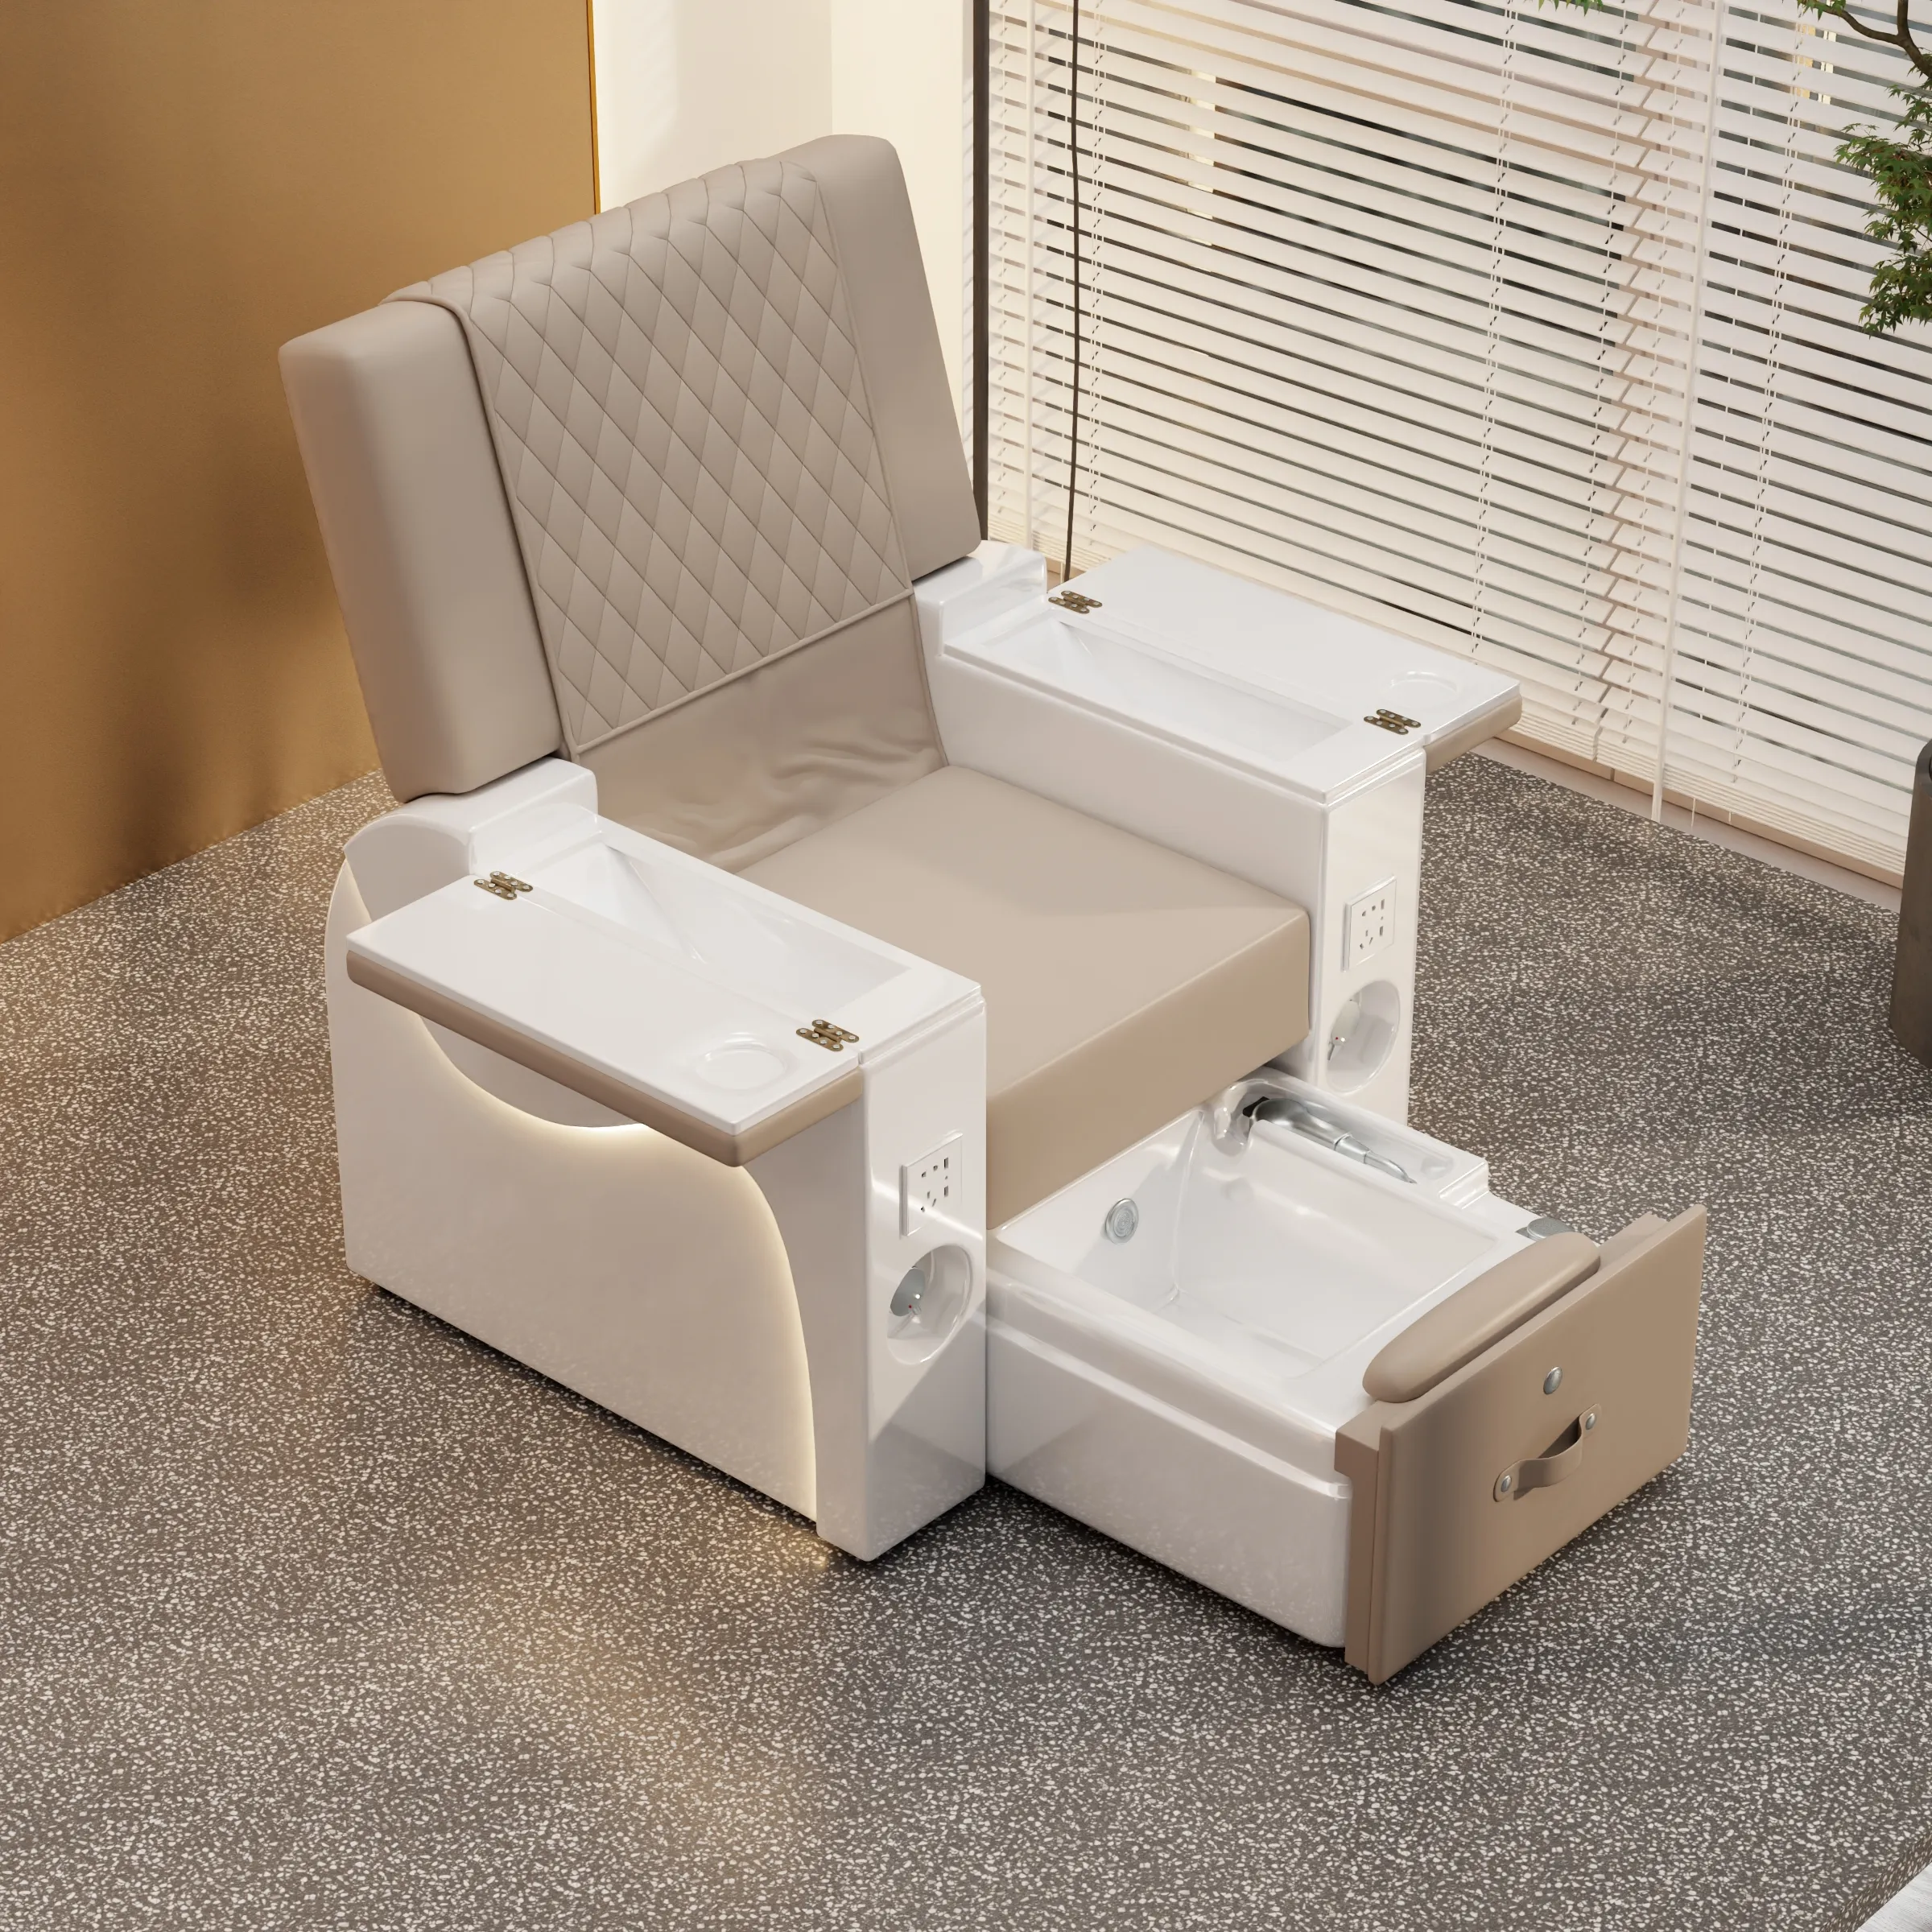 YaYou sıcak satış elektrikli ters geri pedikür sandalyesi ile LED ışık ve desen tasarım renk ayak masaj koltuğu özelleştirebilirsiniz